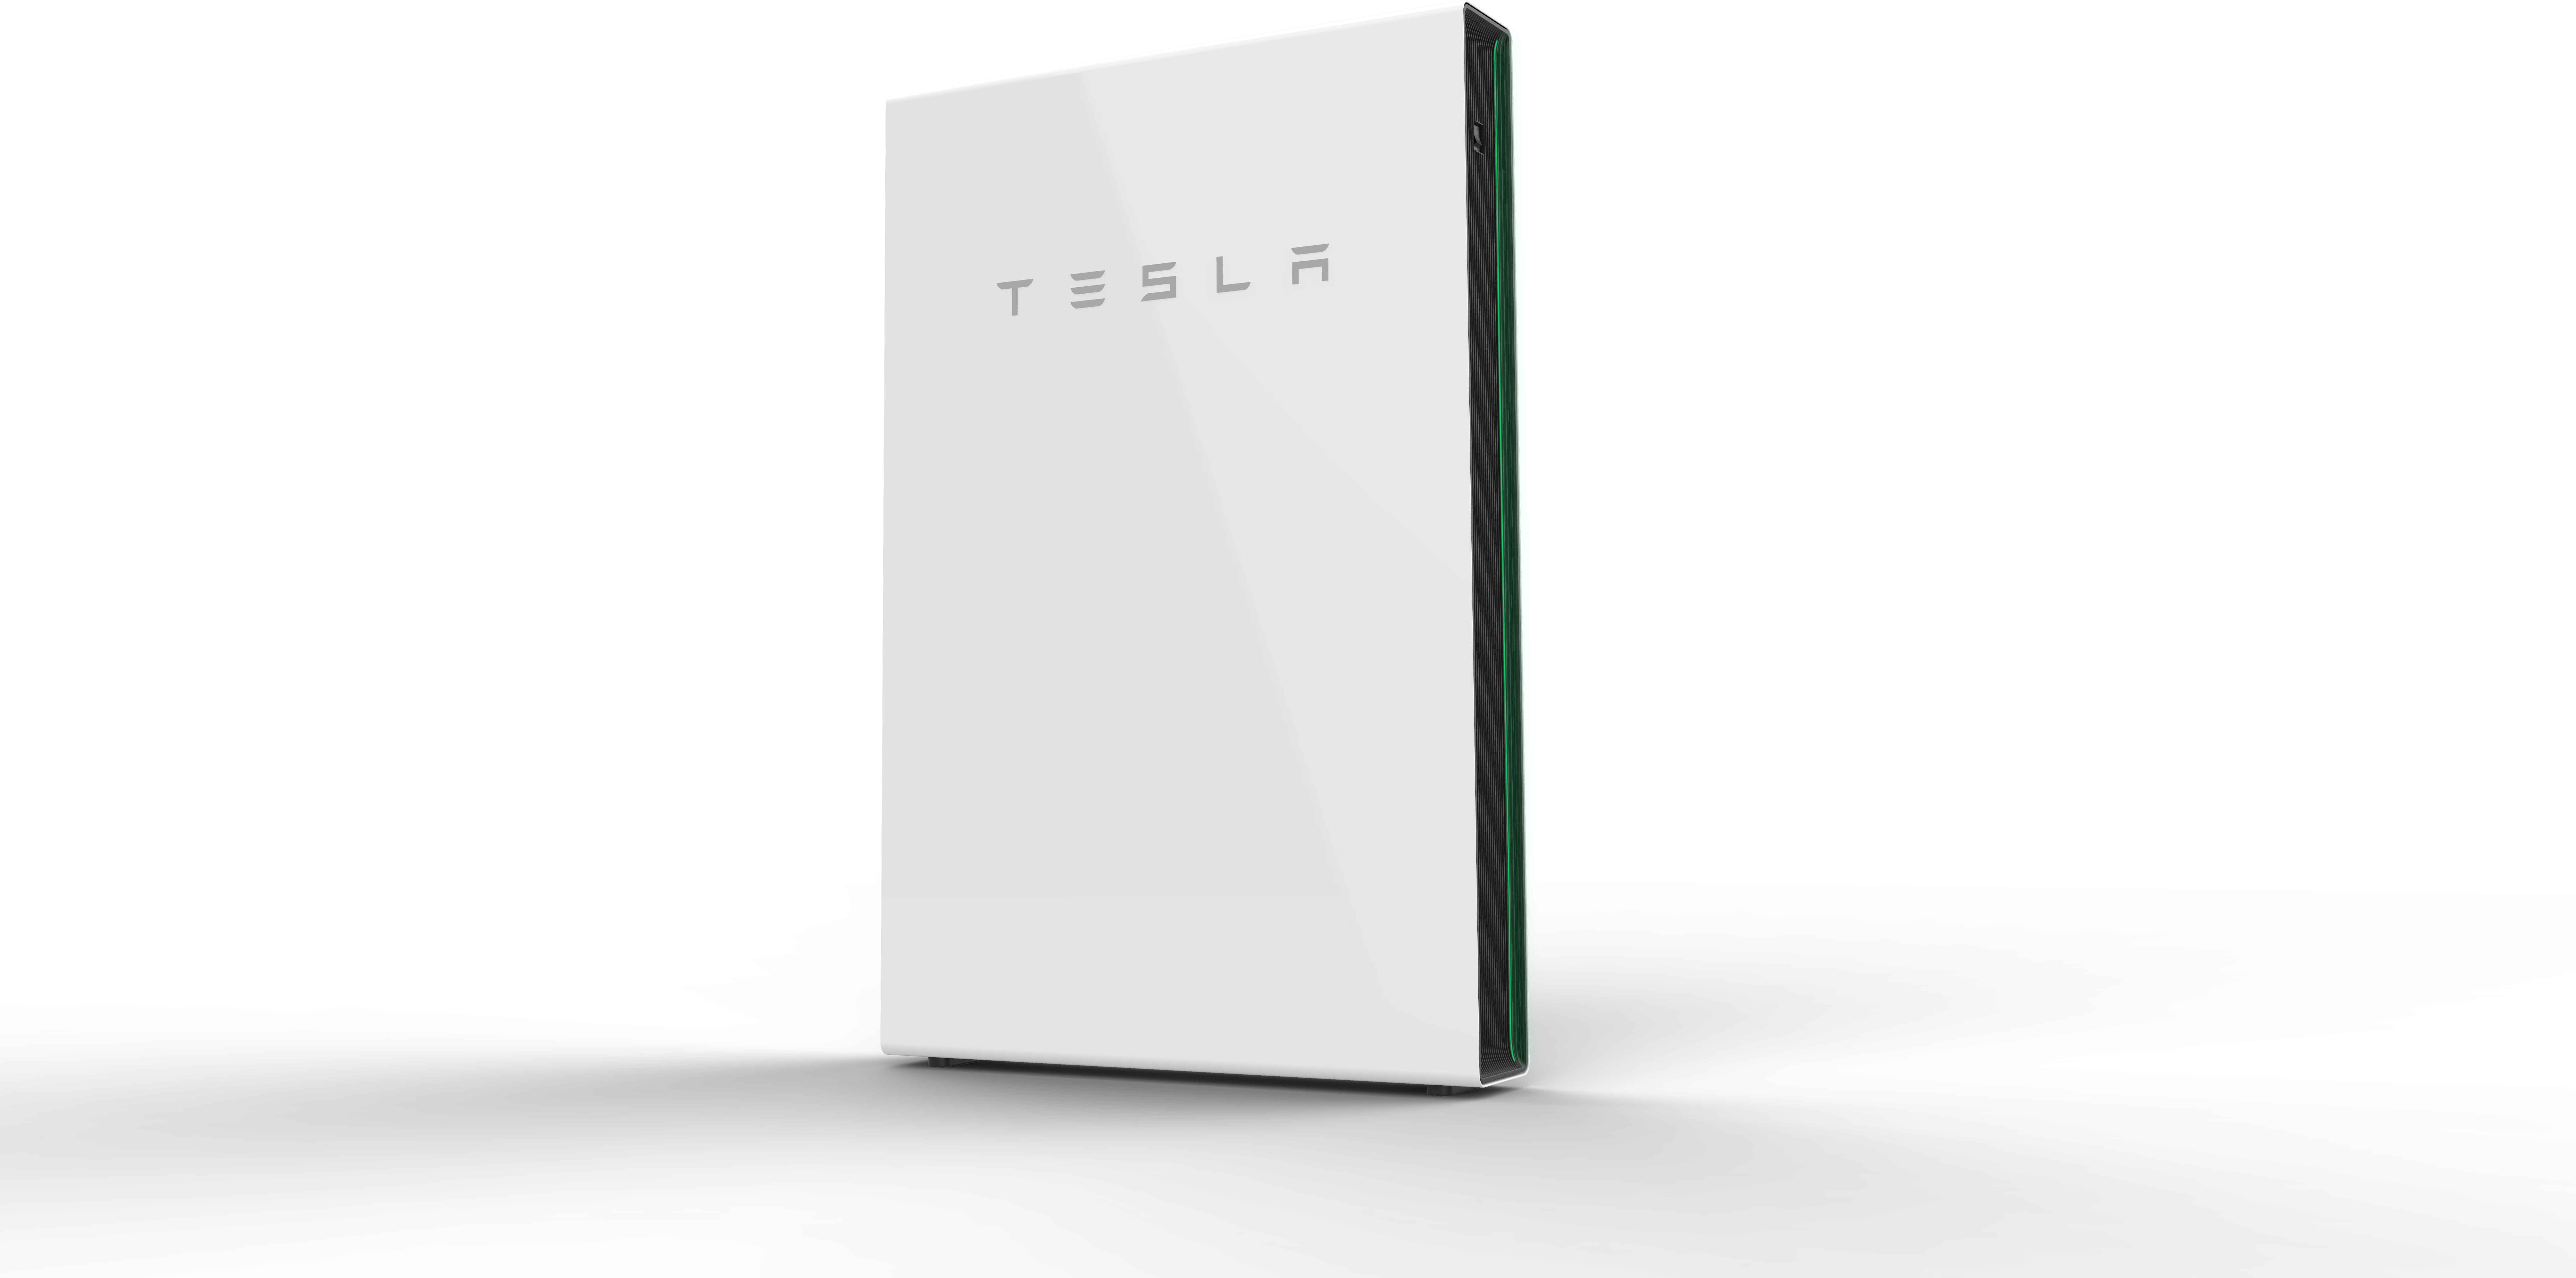 Tesla Powerwall Speicher für SolarIndustrieanlagen, iKratos Solar und